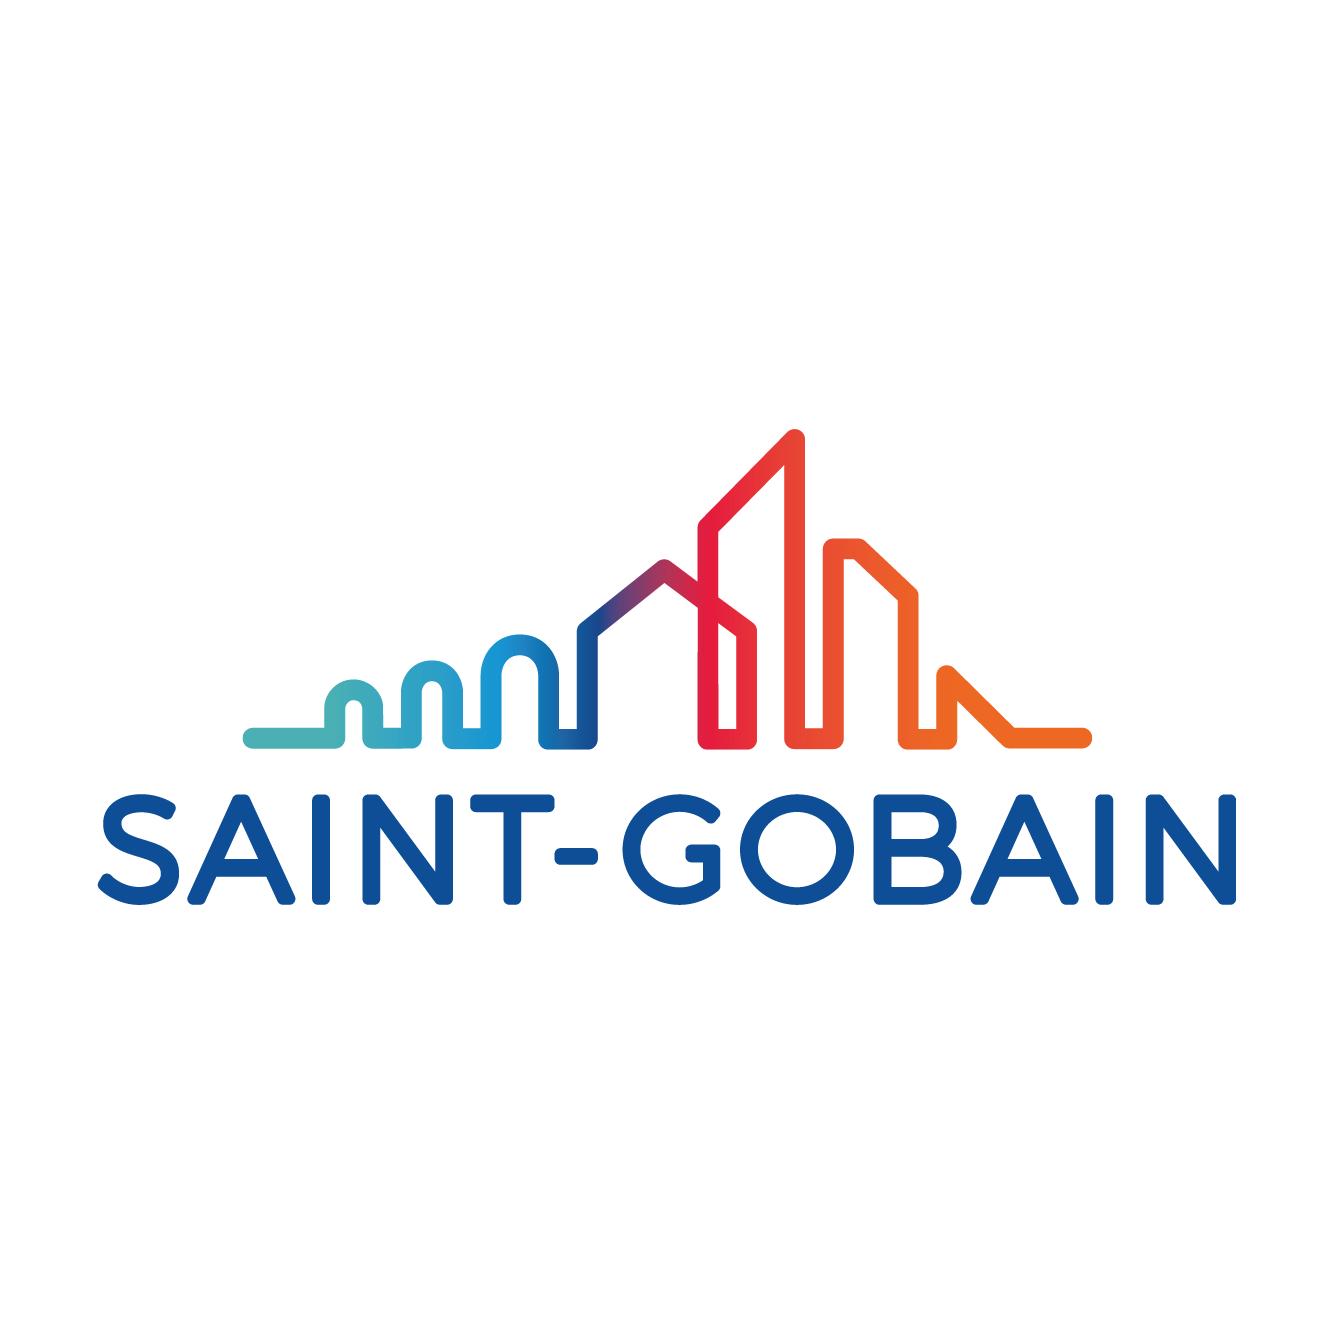 Logo Công ty TNHH Saint-Gobain Việt Nam